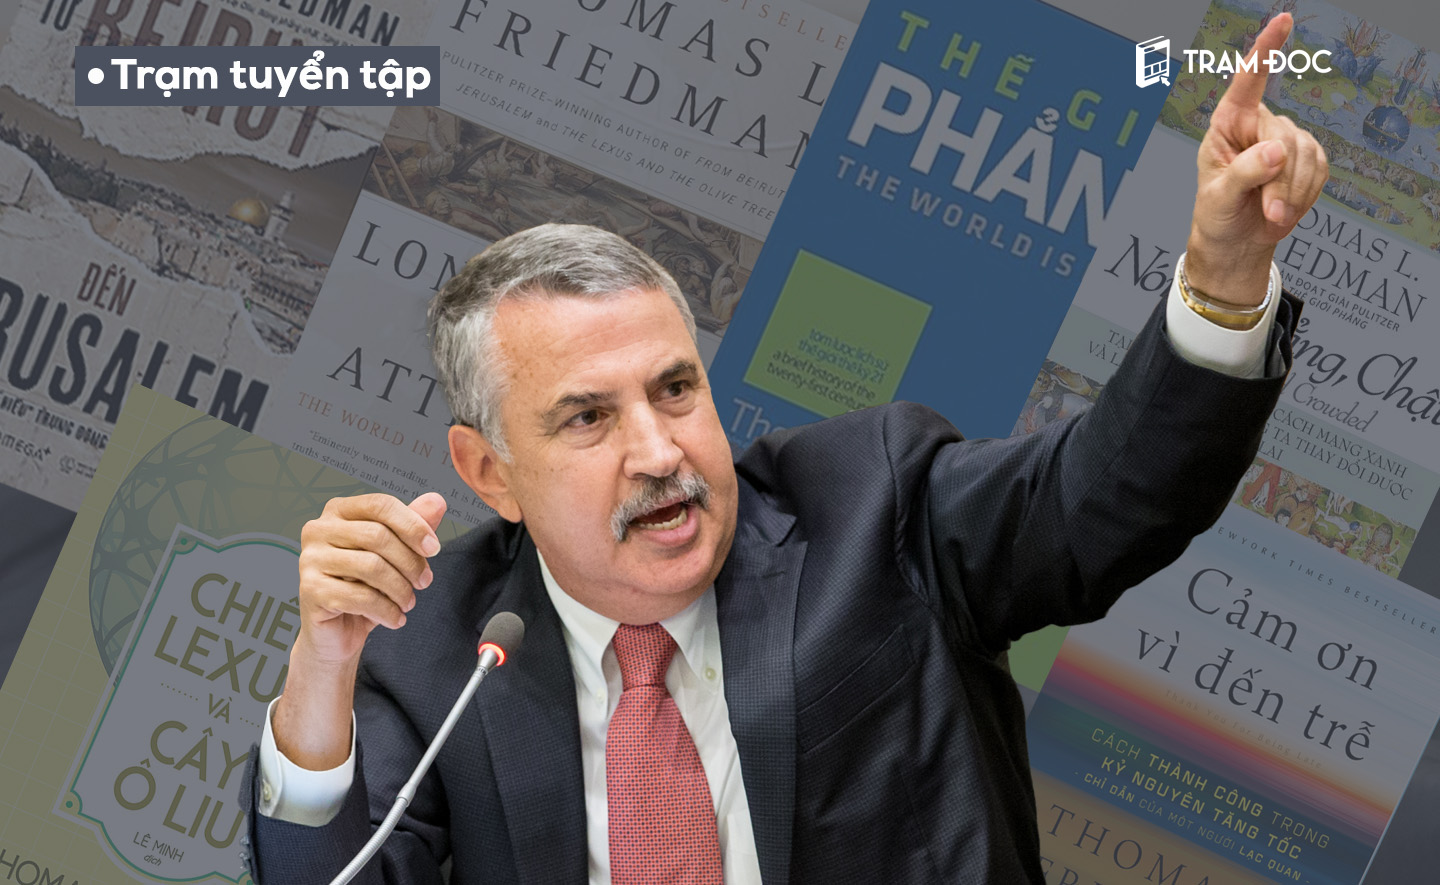 6 cuốn sách của nhà báo Thomas Friedman mà bạn không muốn bỏ lỡ nếu thích đề tài đối ngoại